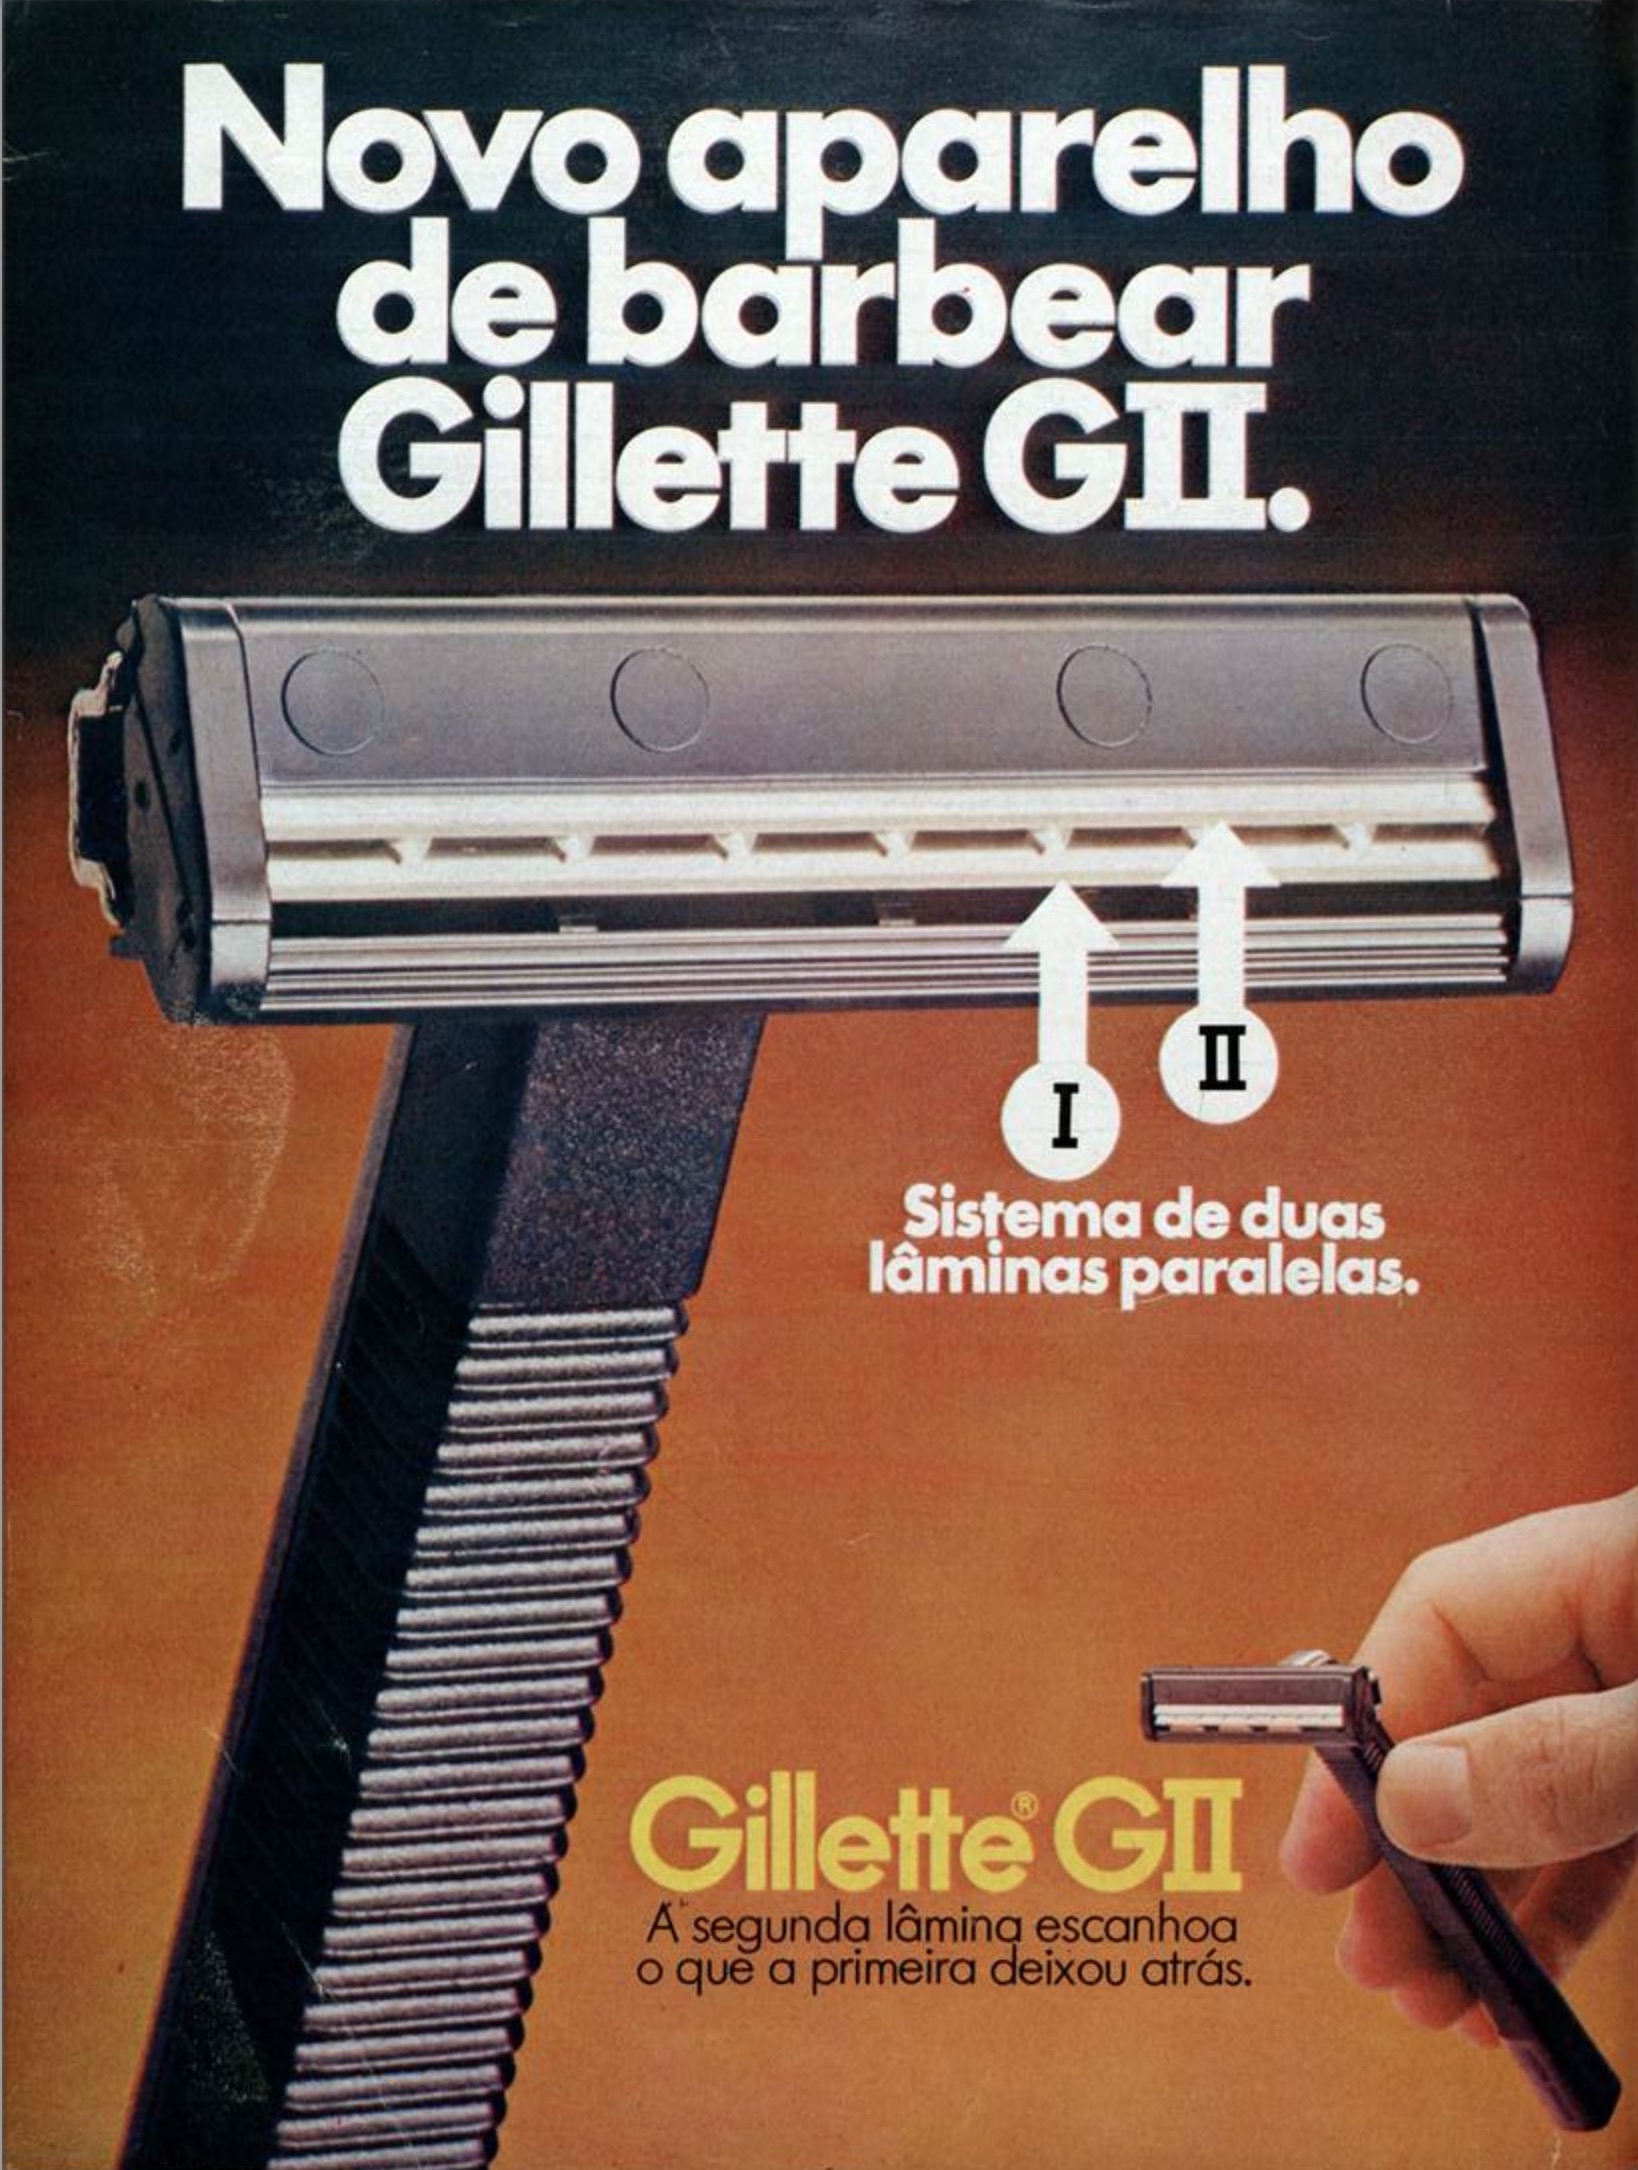 Campanha da Gillette promovendo o novo aparelho de barbear em 1975